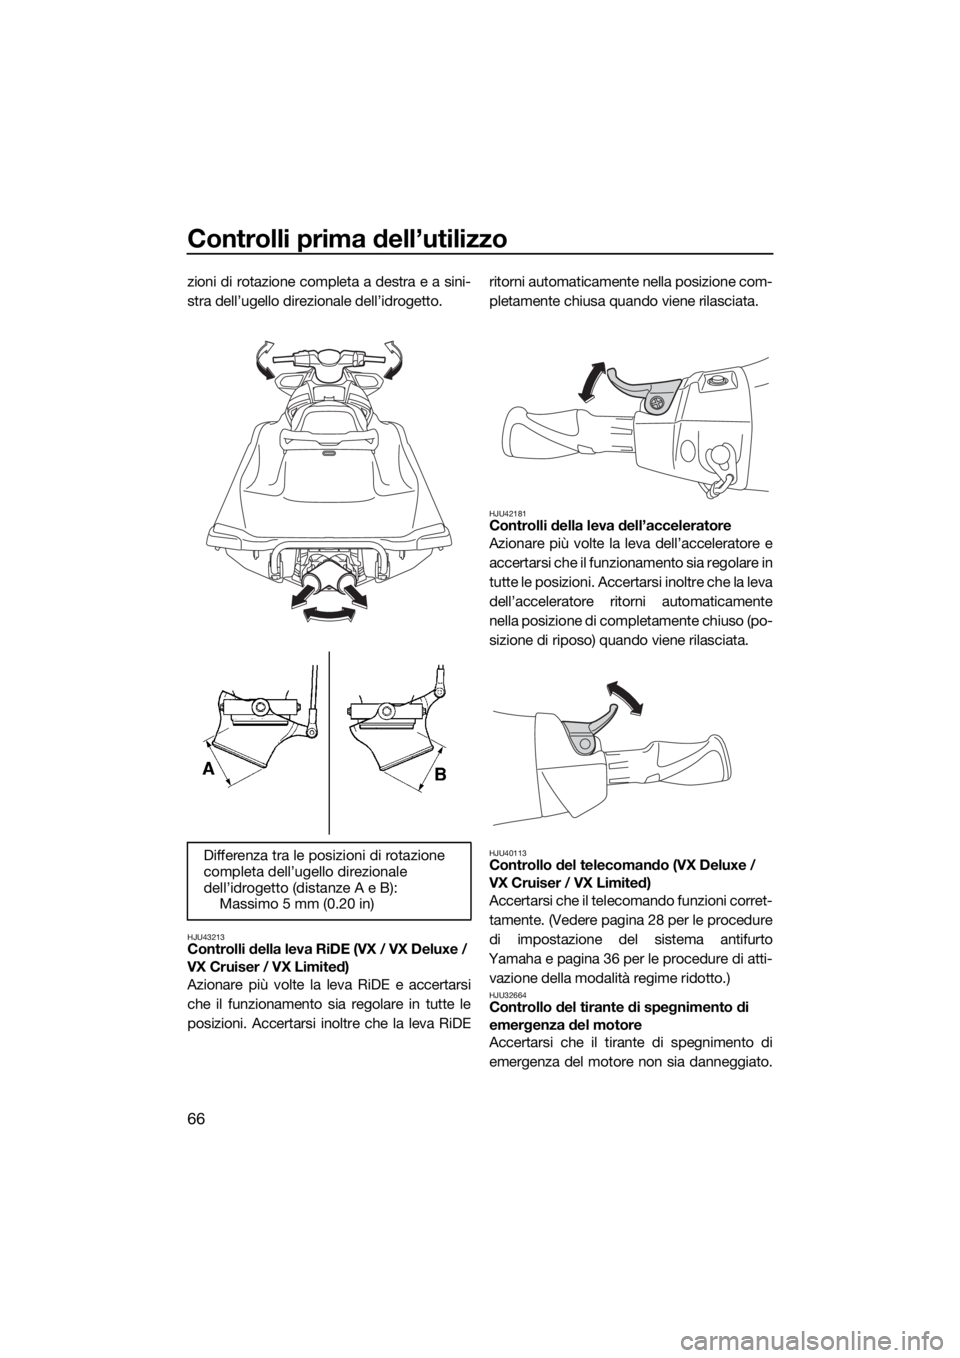 YAMAHA VX 2019  Manuale duso (in Italian) Controlli prima dell’utilizzo
66
zioni di rotazione completa a destra e a sini-
stra dell’ugello direzionale dell’idrogetto.
HJU43213Controlli della leva RiDE (VX / VX Deluxe / 
VX Cruiser / VX 